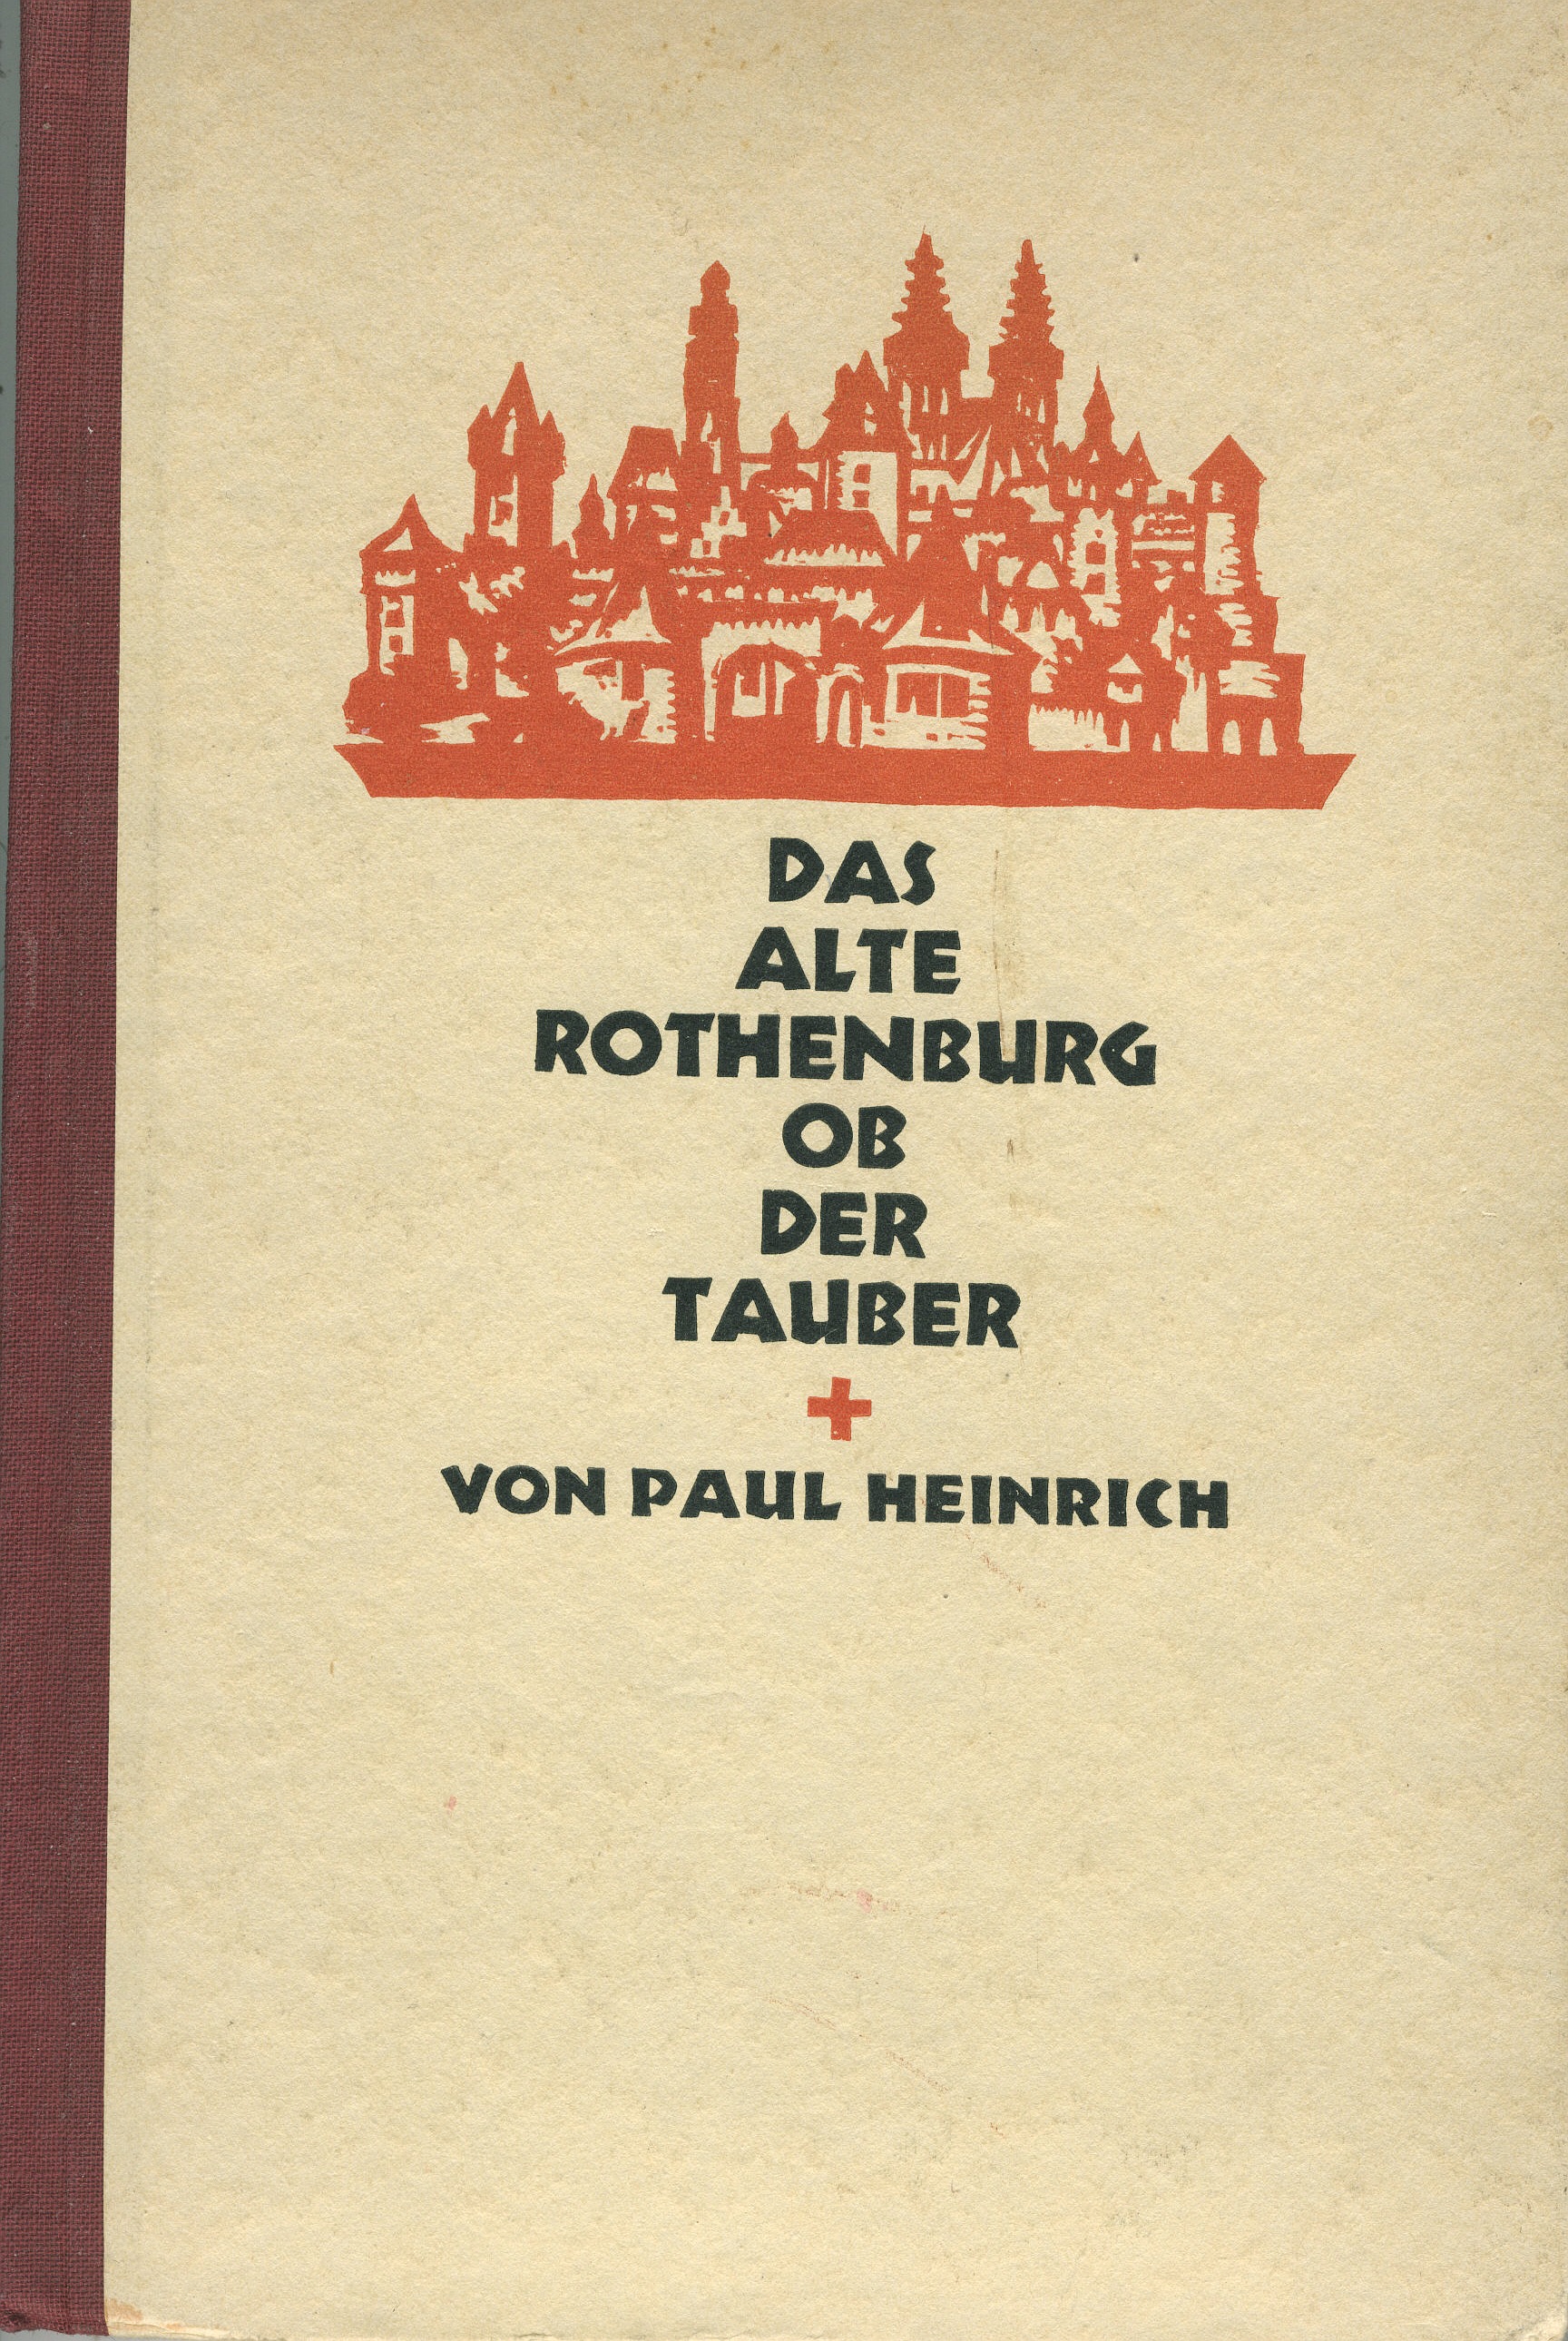 Titel des Buches von 1926